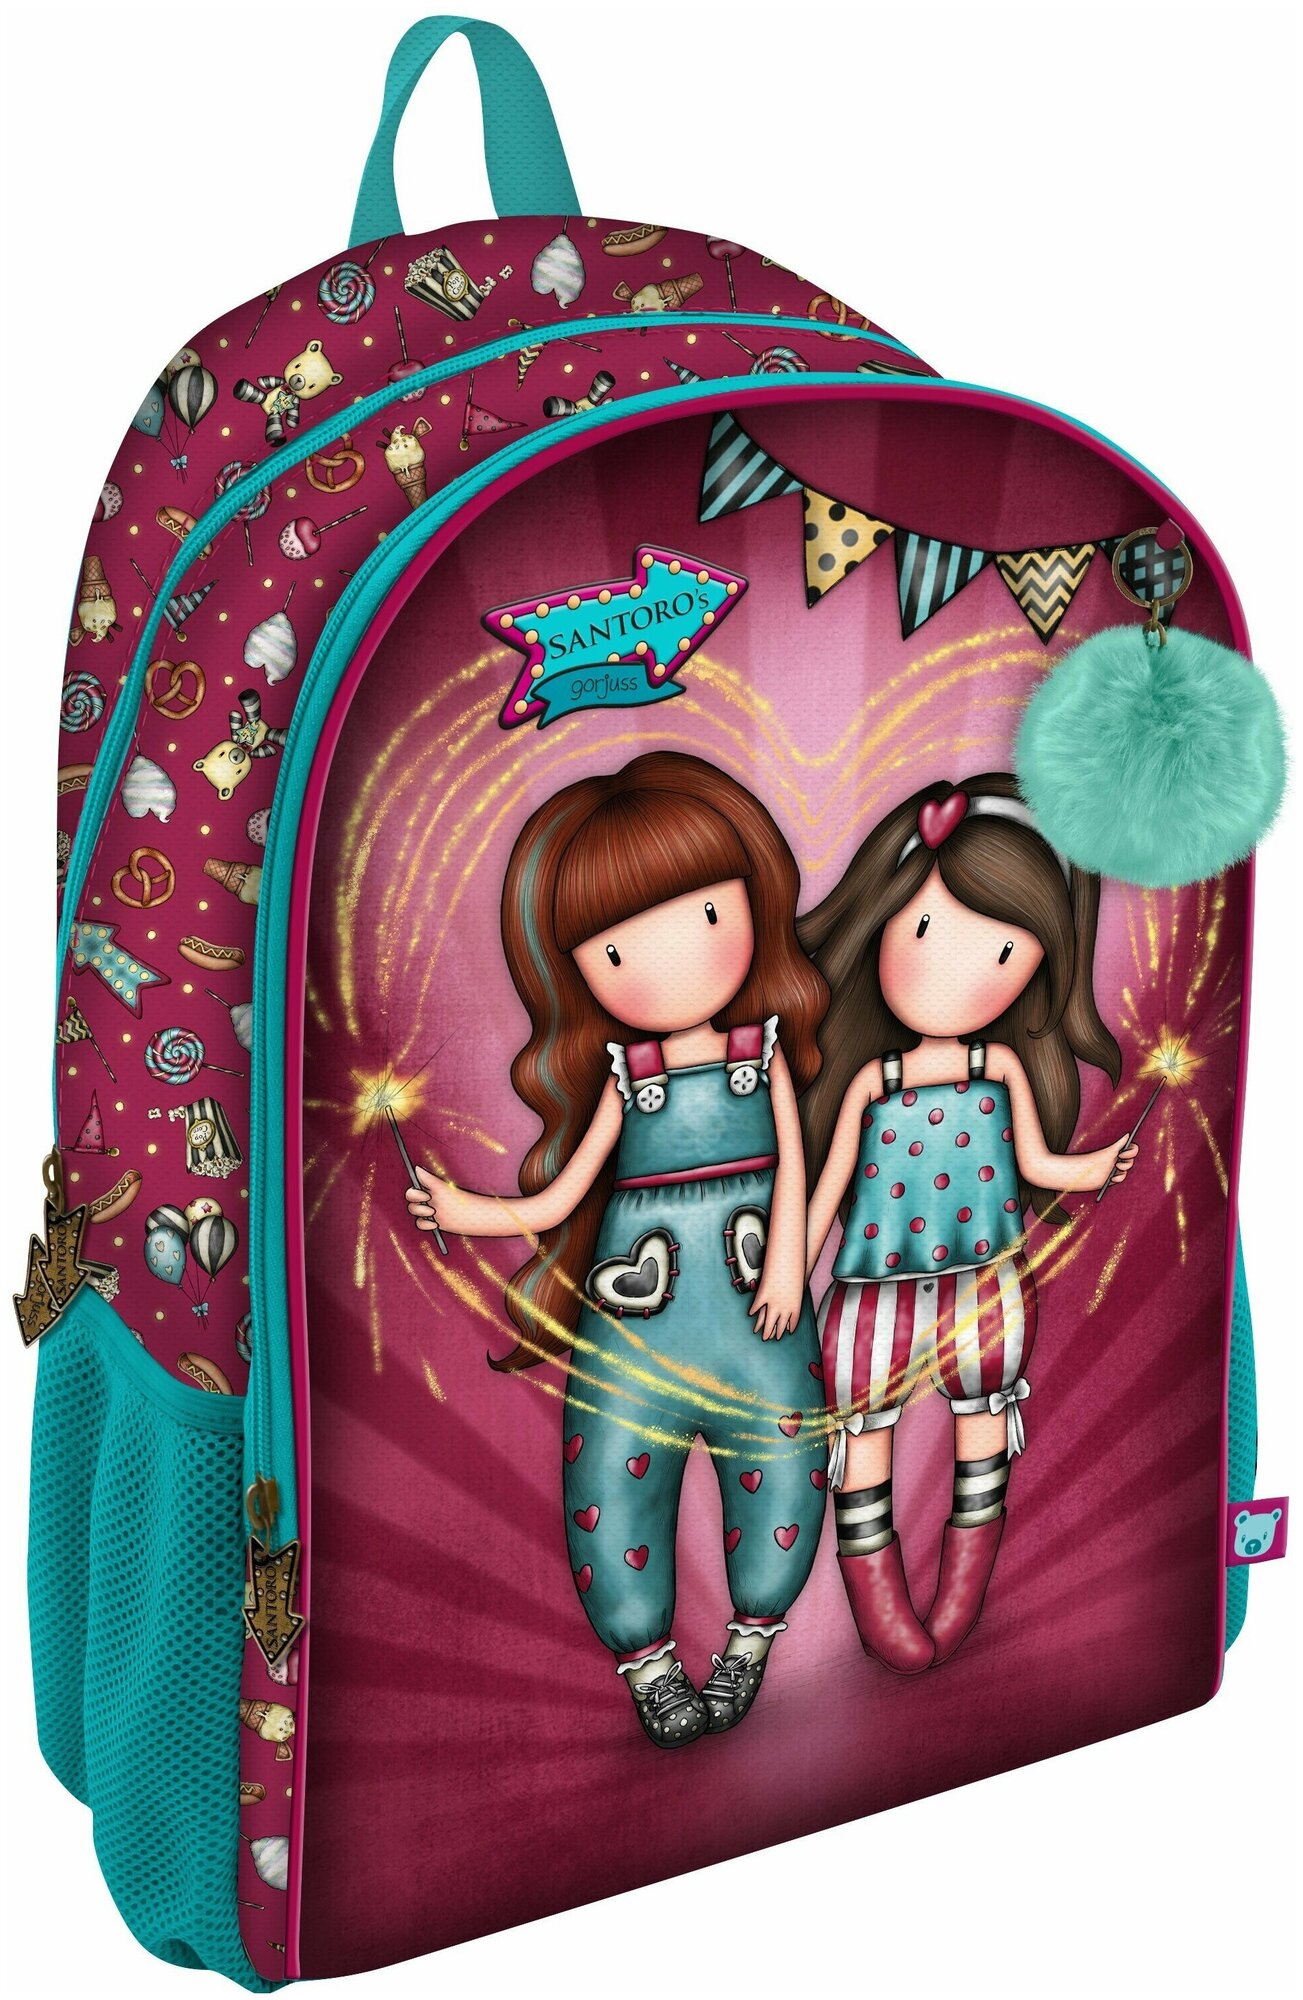 Santoro London Школьный рюкзак с двумя отделениями Fairground - Fireworks